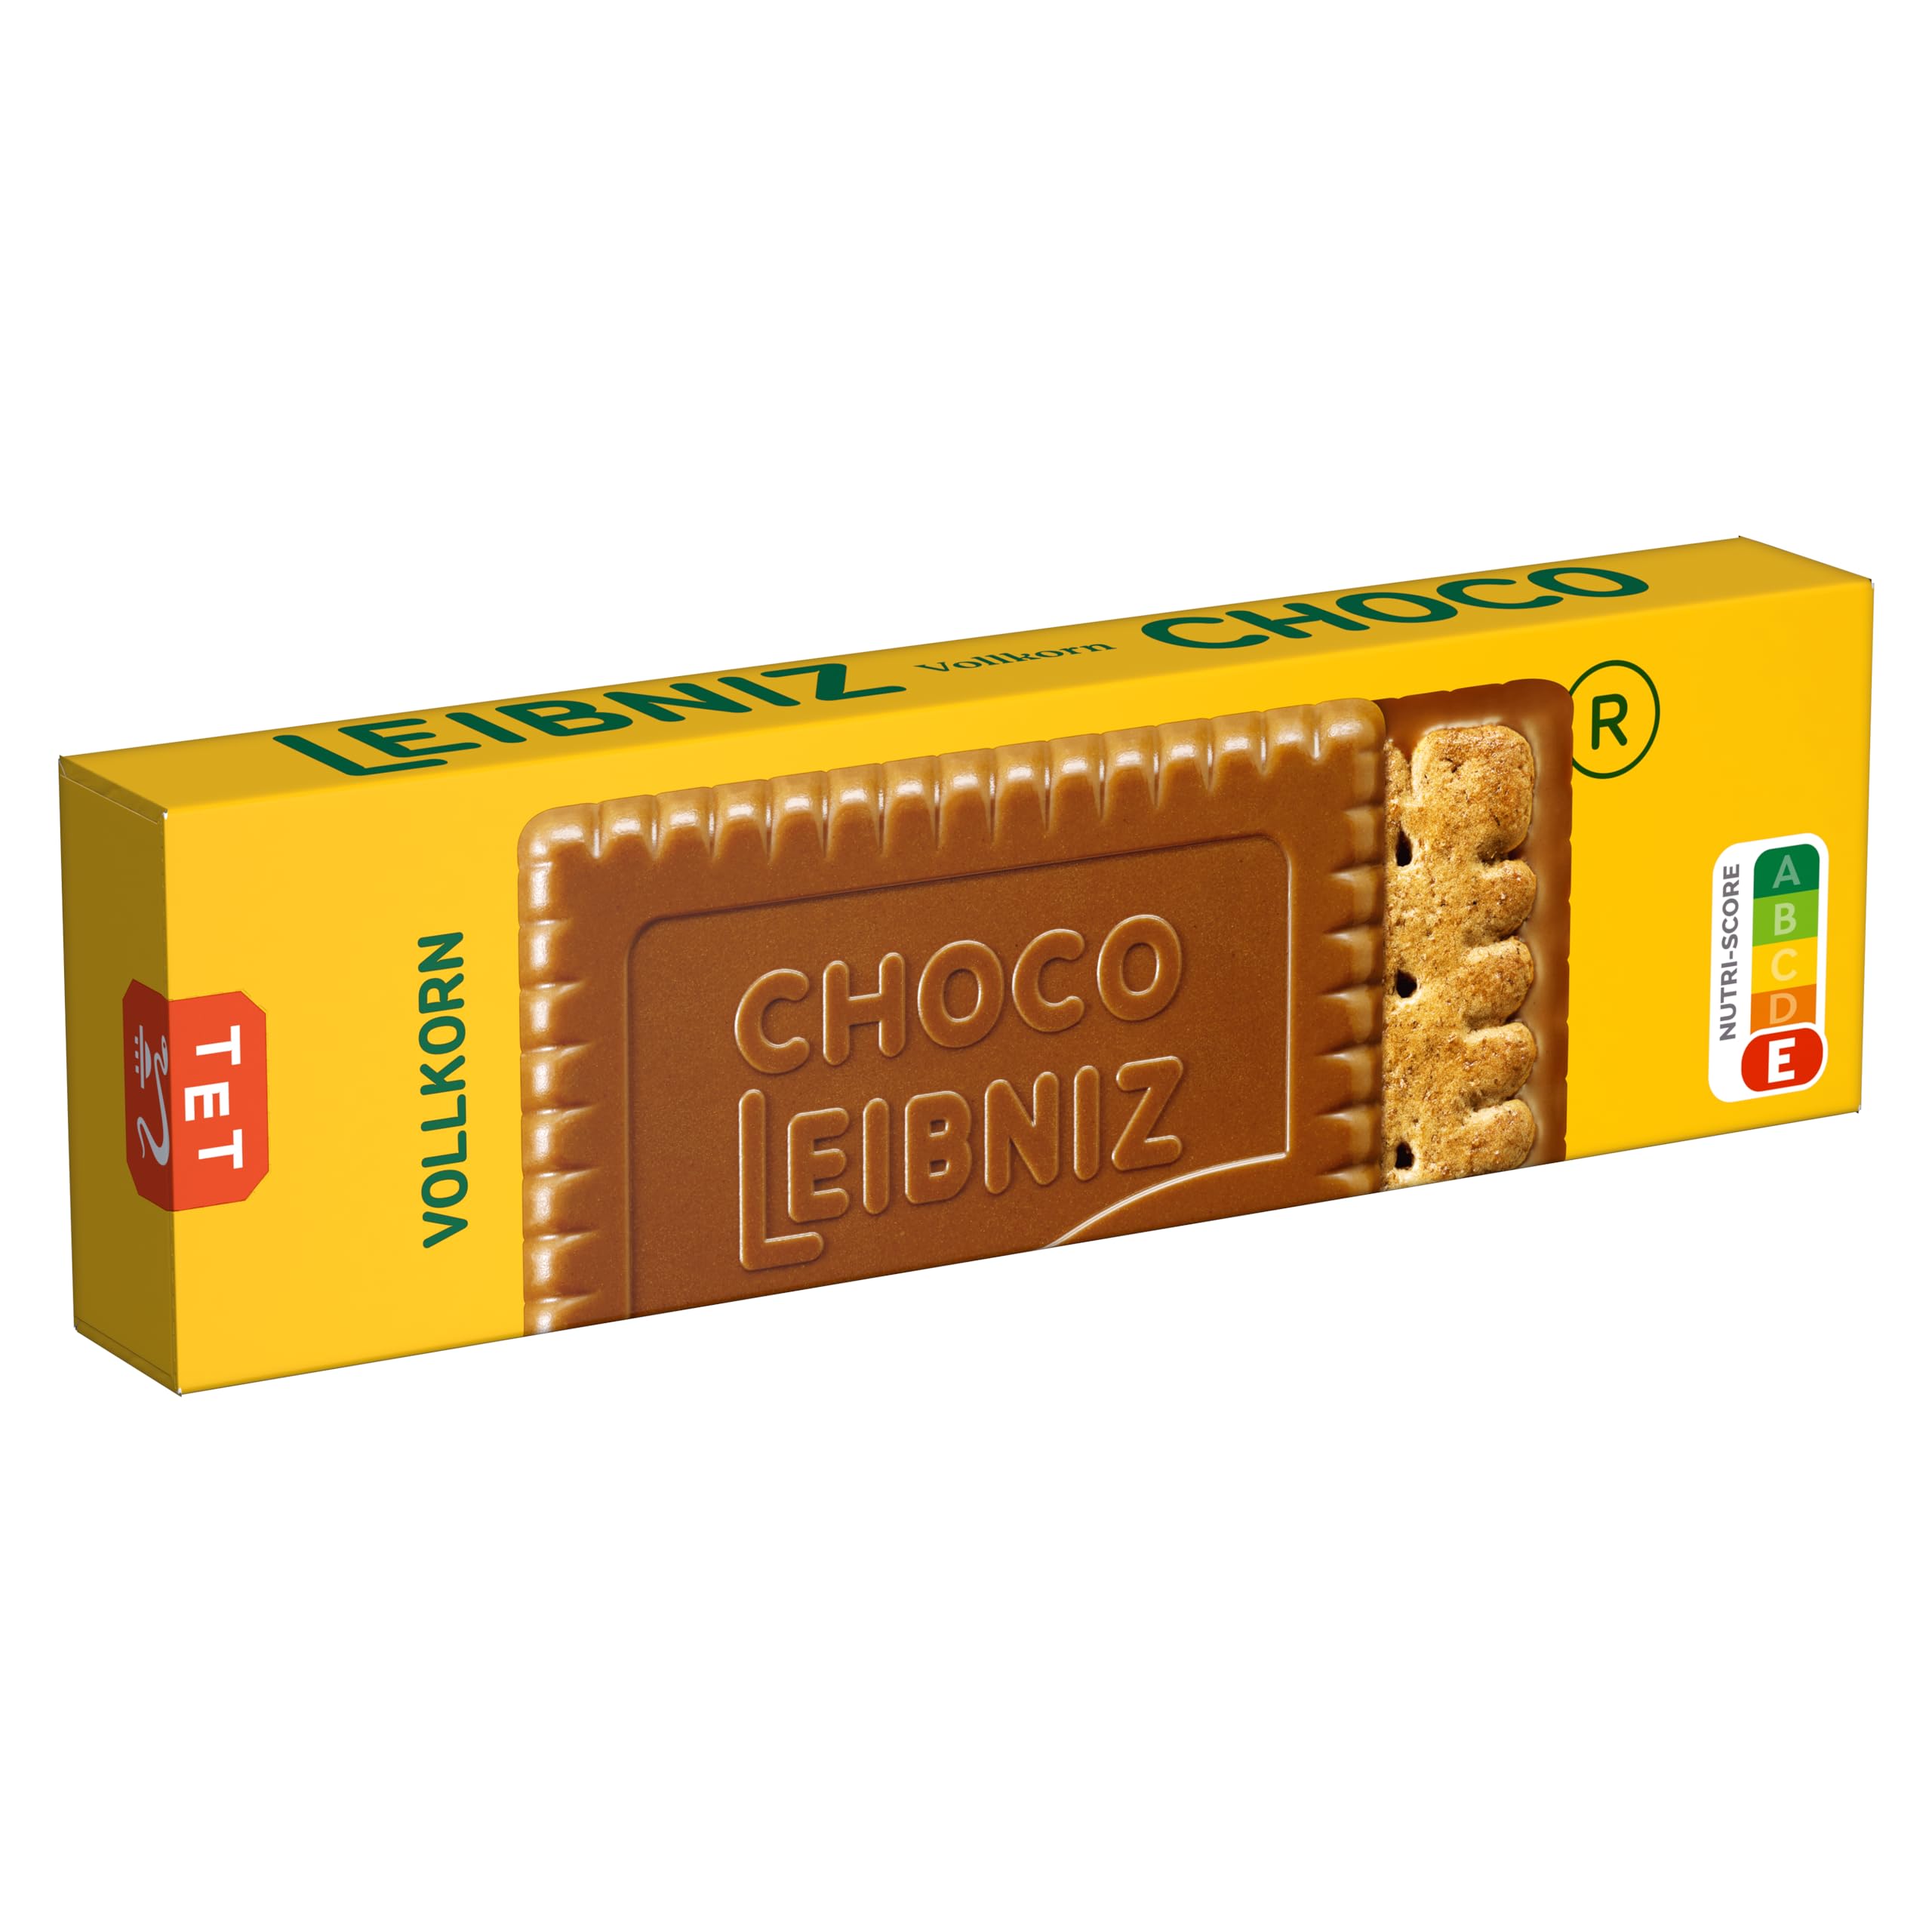 LEIBNIZ Choco Vollkorn, 12er Pack, knusprige Vollkornkekse eingebettet in zarte Milchschokolade, Großpackung als Vorrat oder zum Verkauf (12 x 125 g)